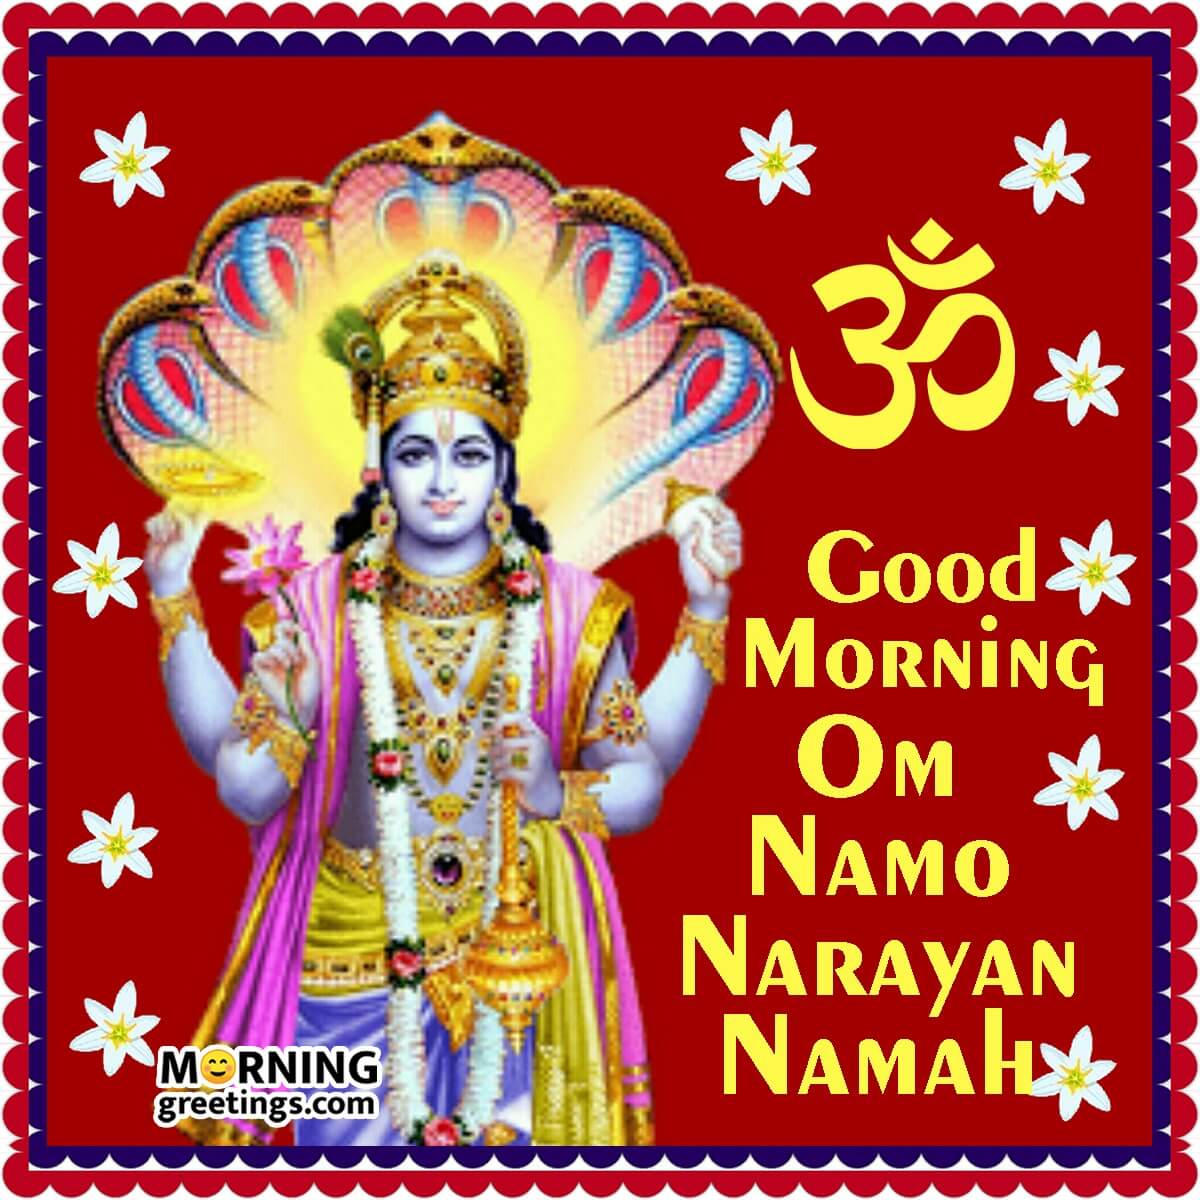 Good Morning Om Namo Narayan Namah